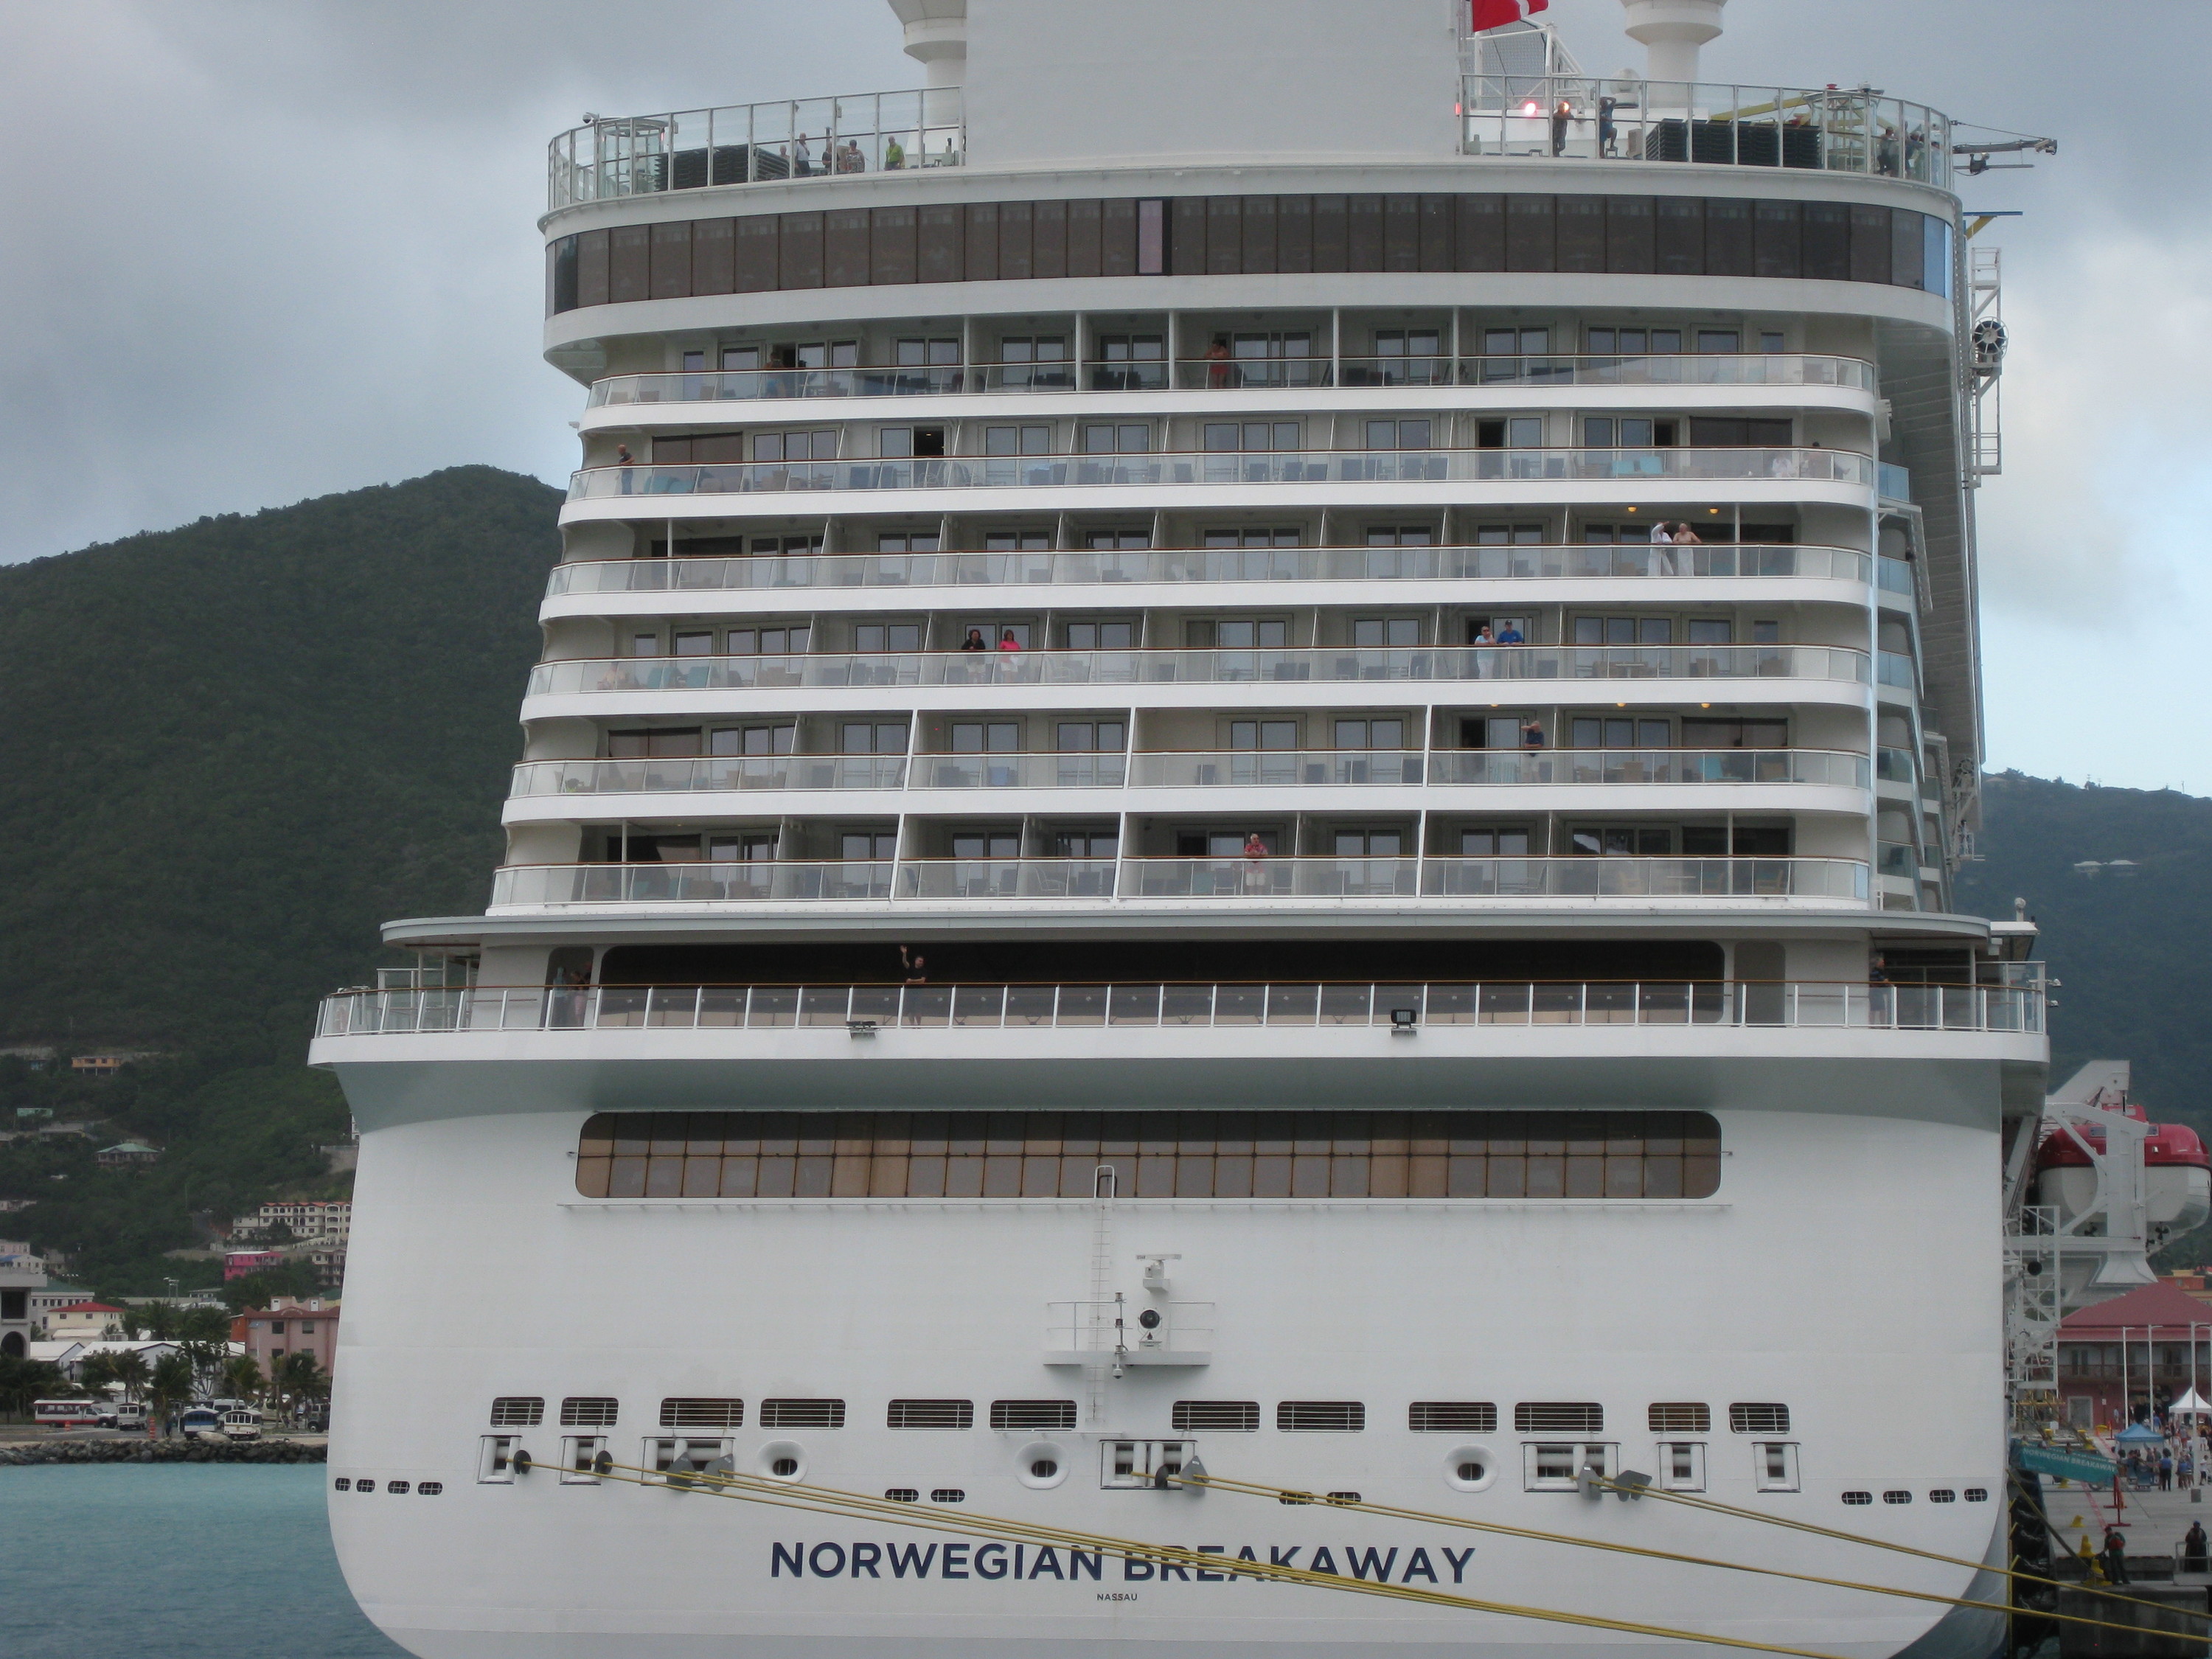 Norwegian Breakaway in Tortola